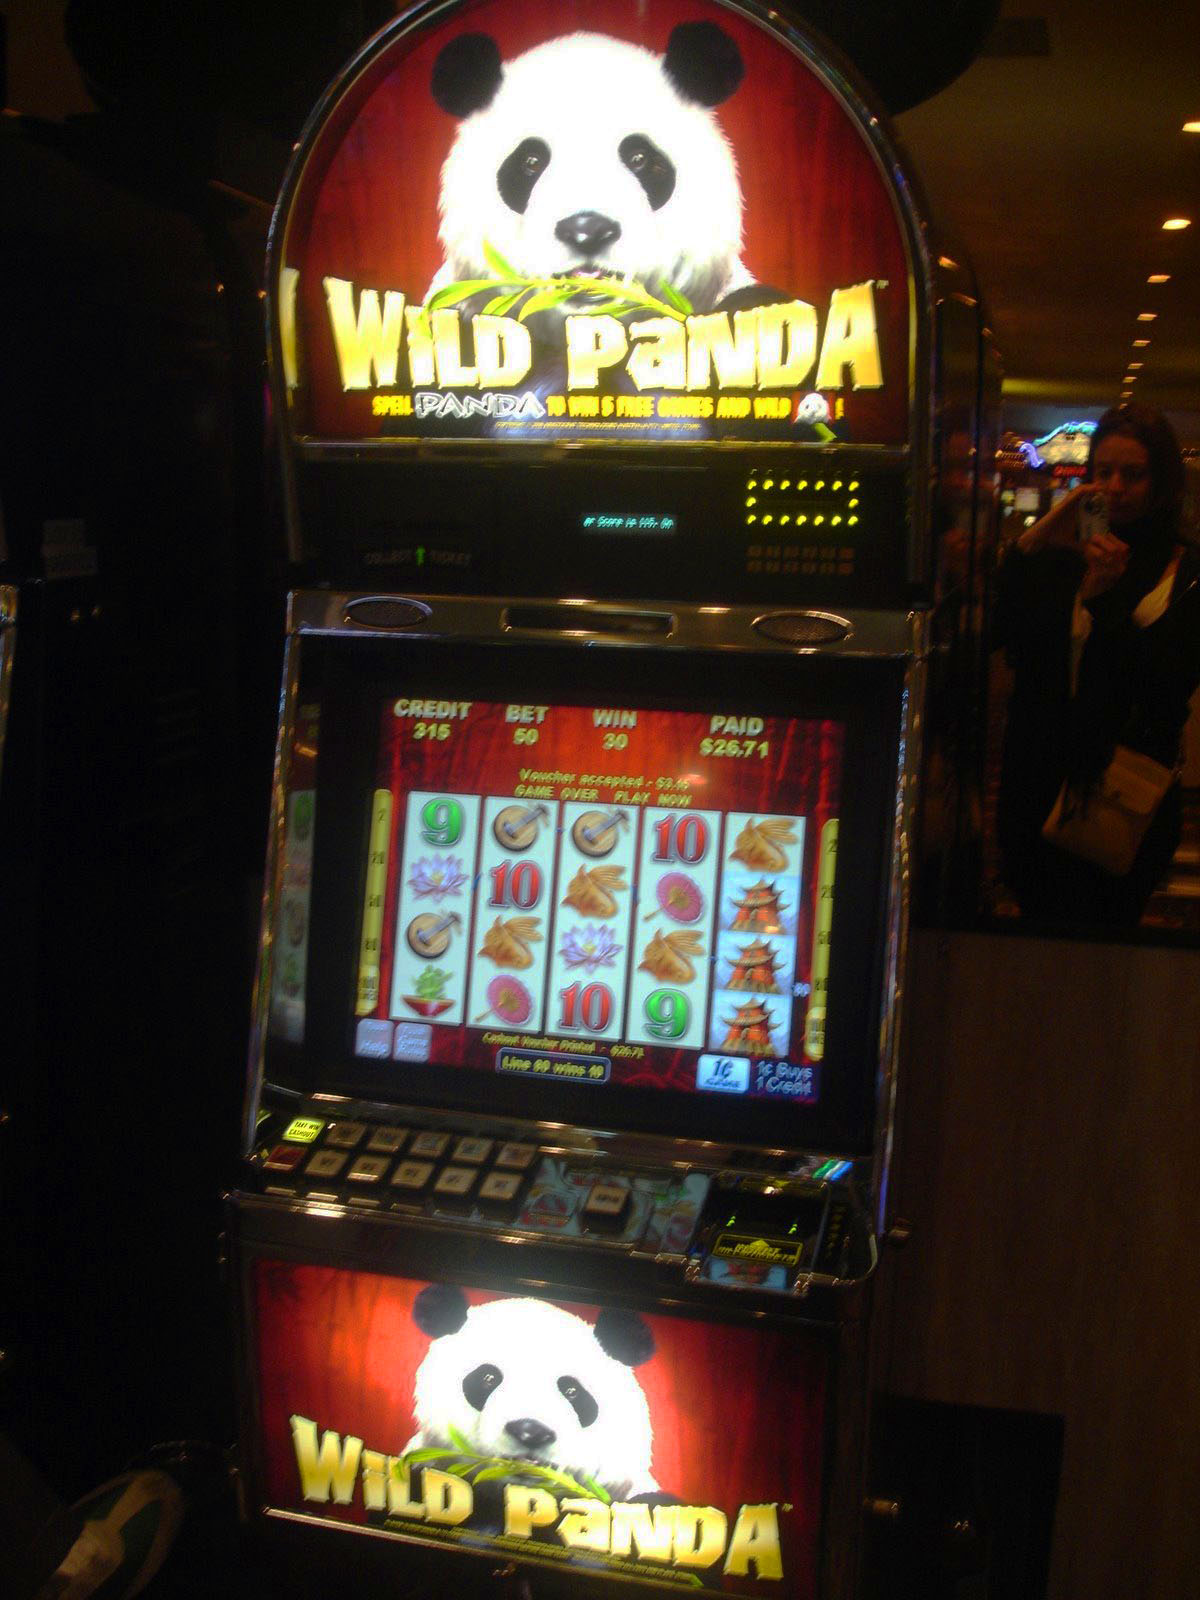 Wild Panda Slot Machine